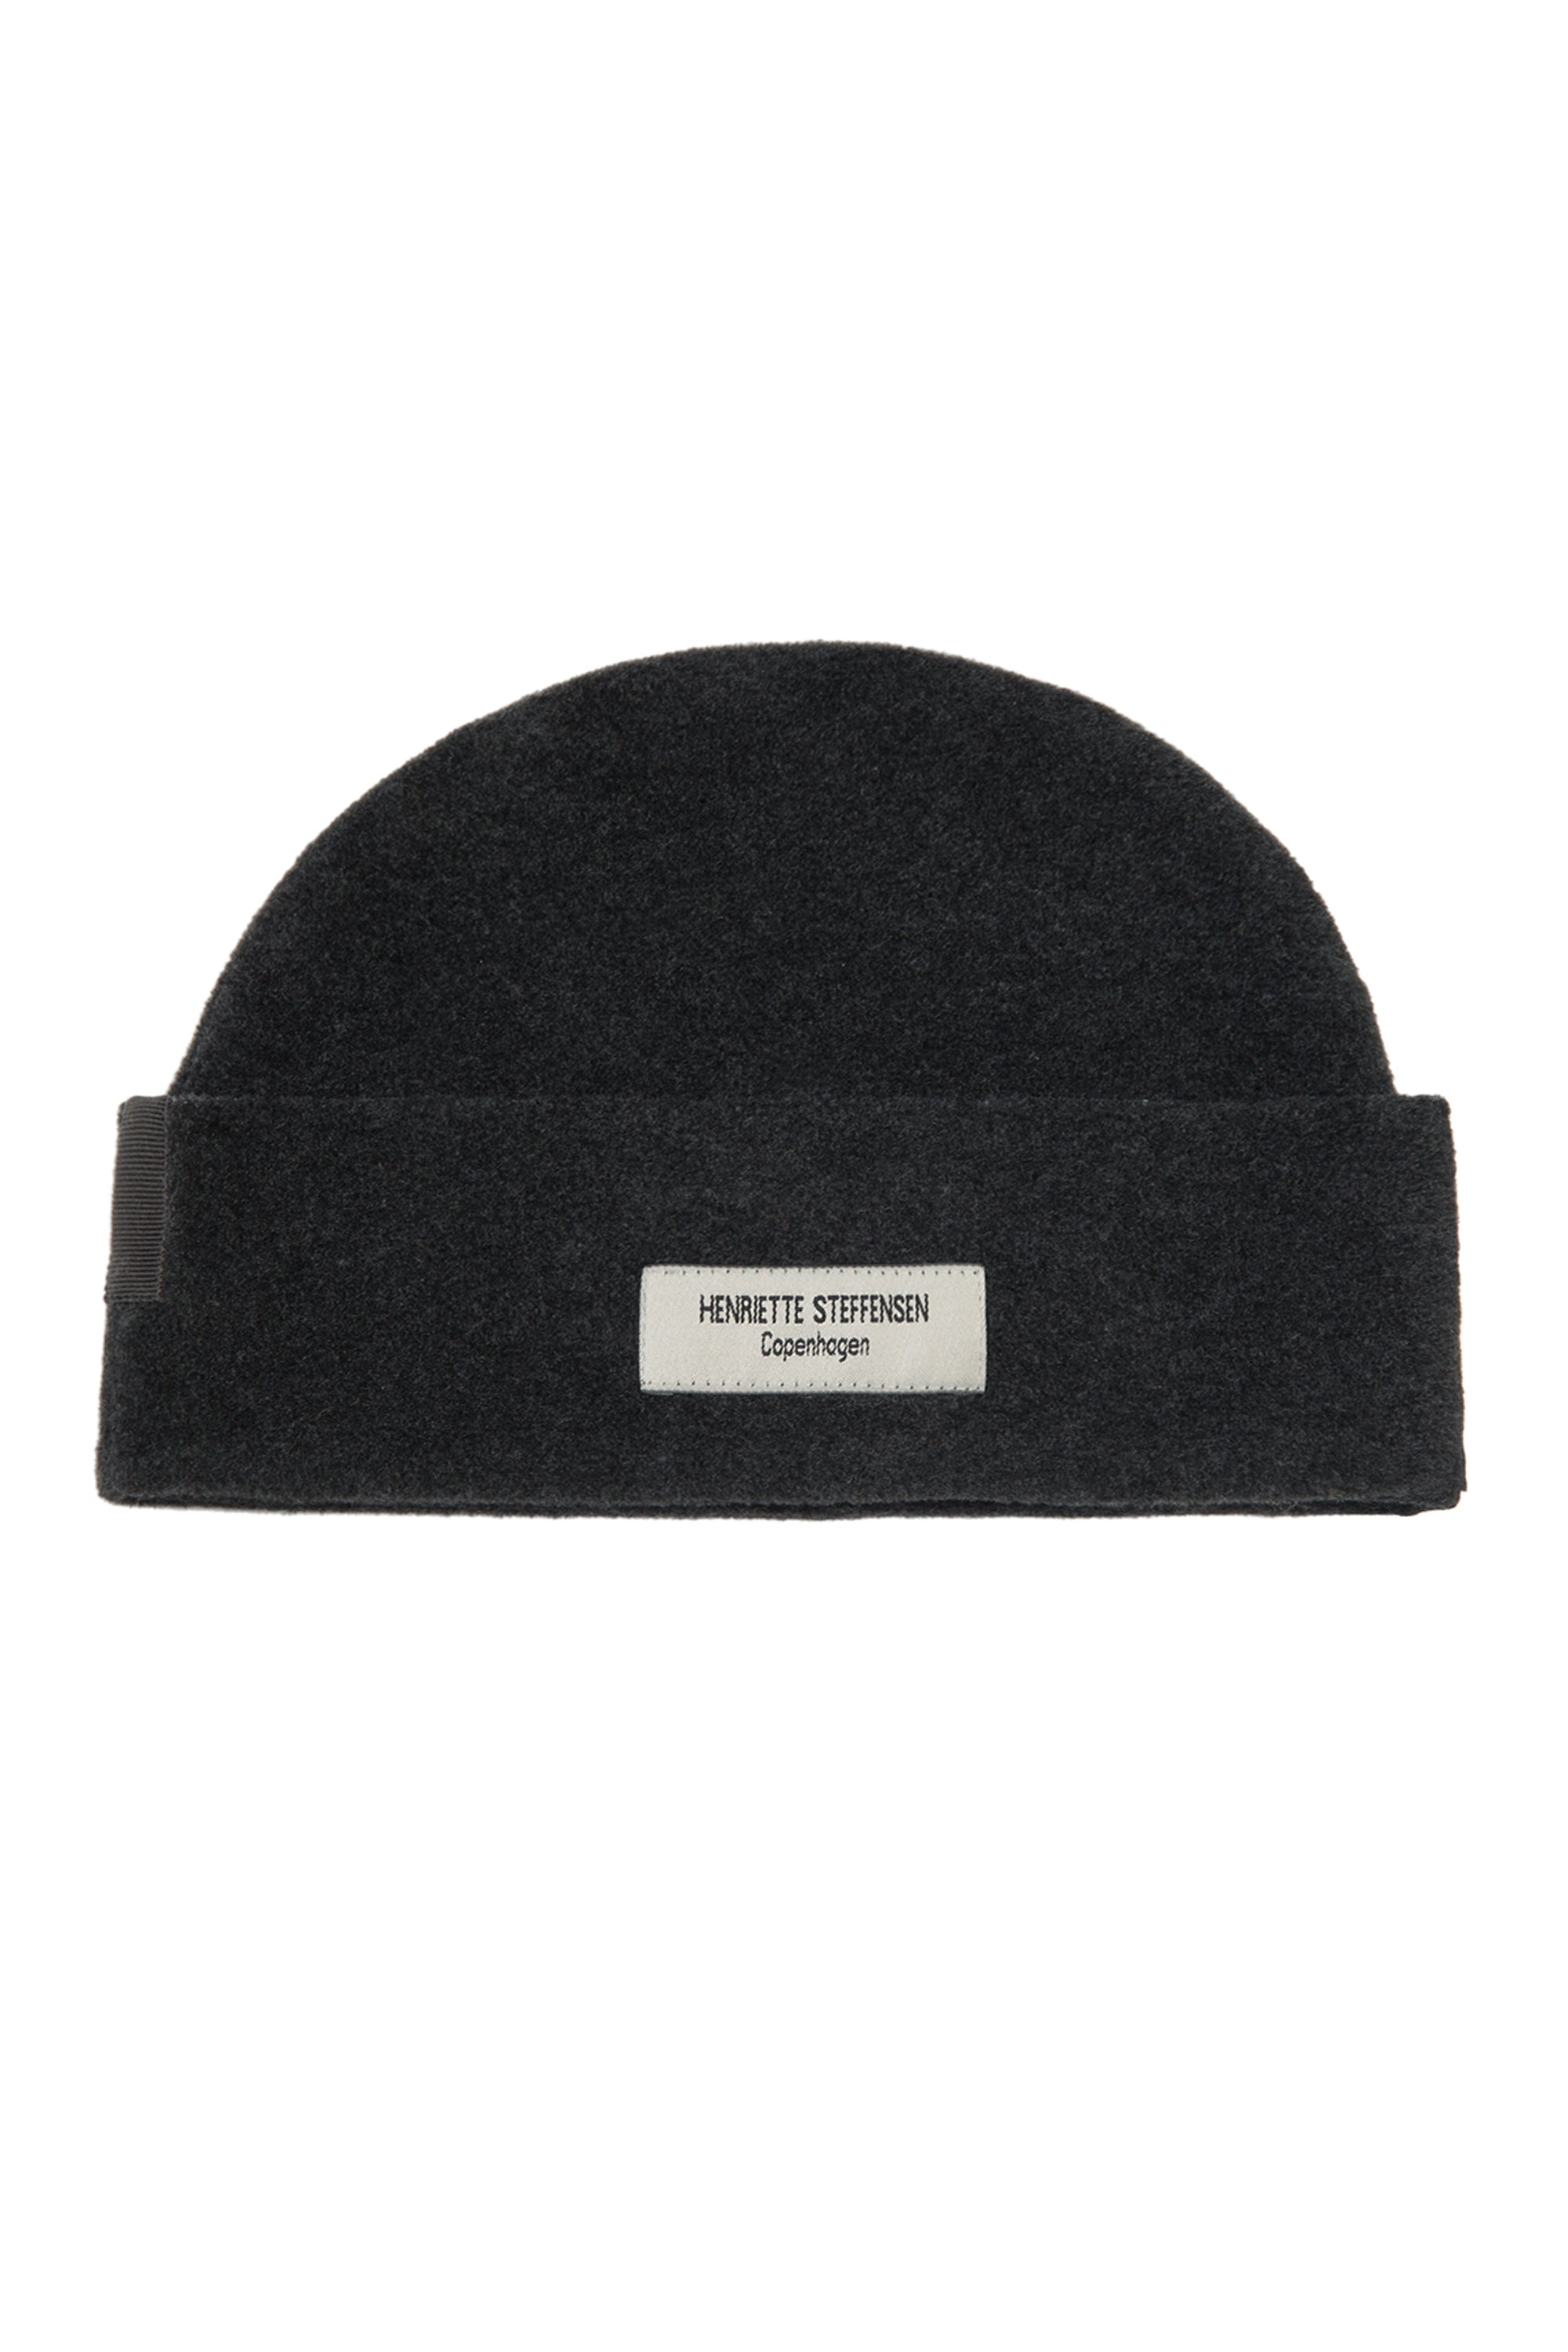 HENRIETTE STEFFENSEN COPENHAGEN HAT BEANIE - 4071 HATS SOFT BLACK 914